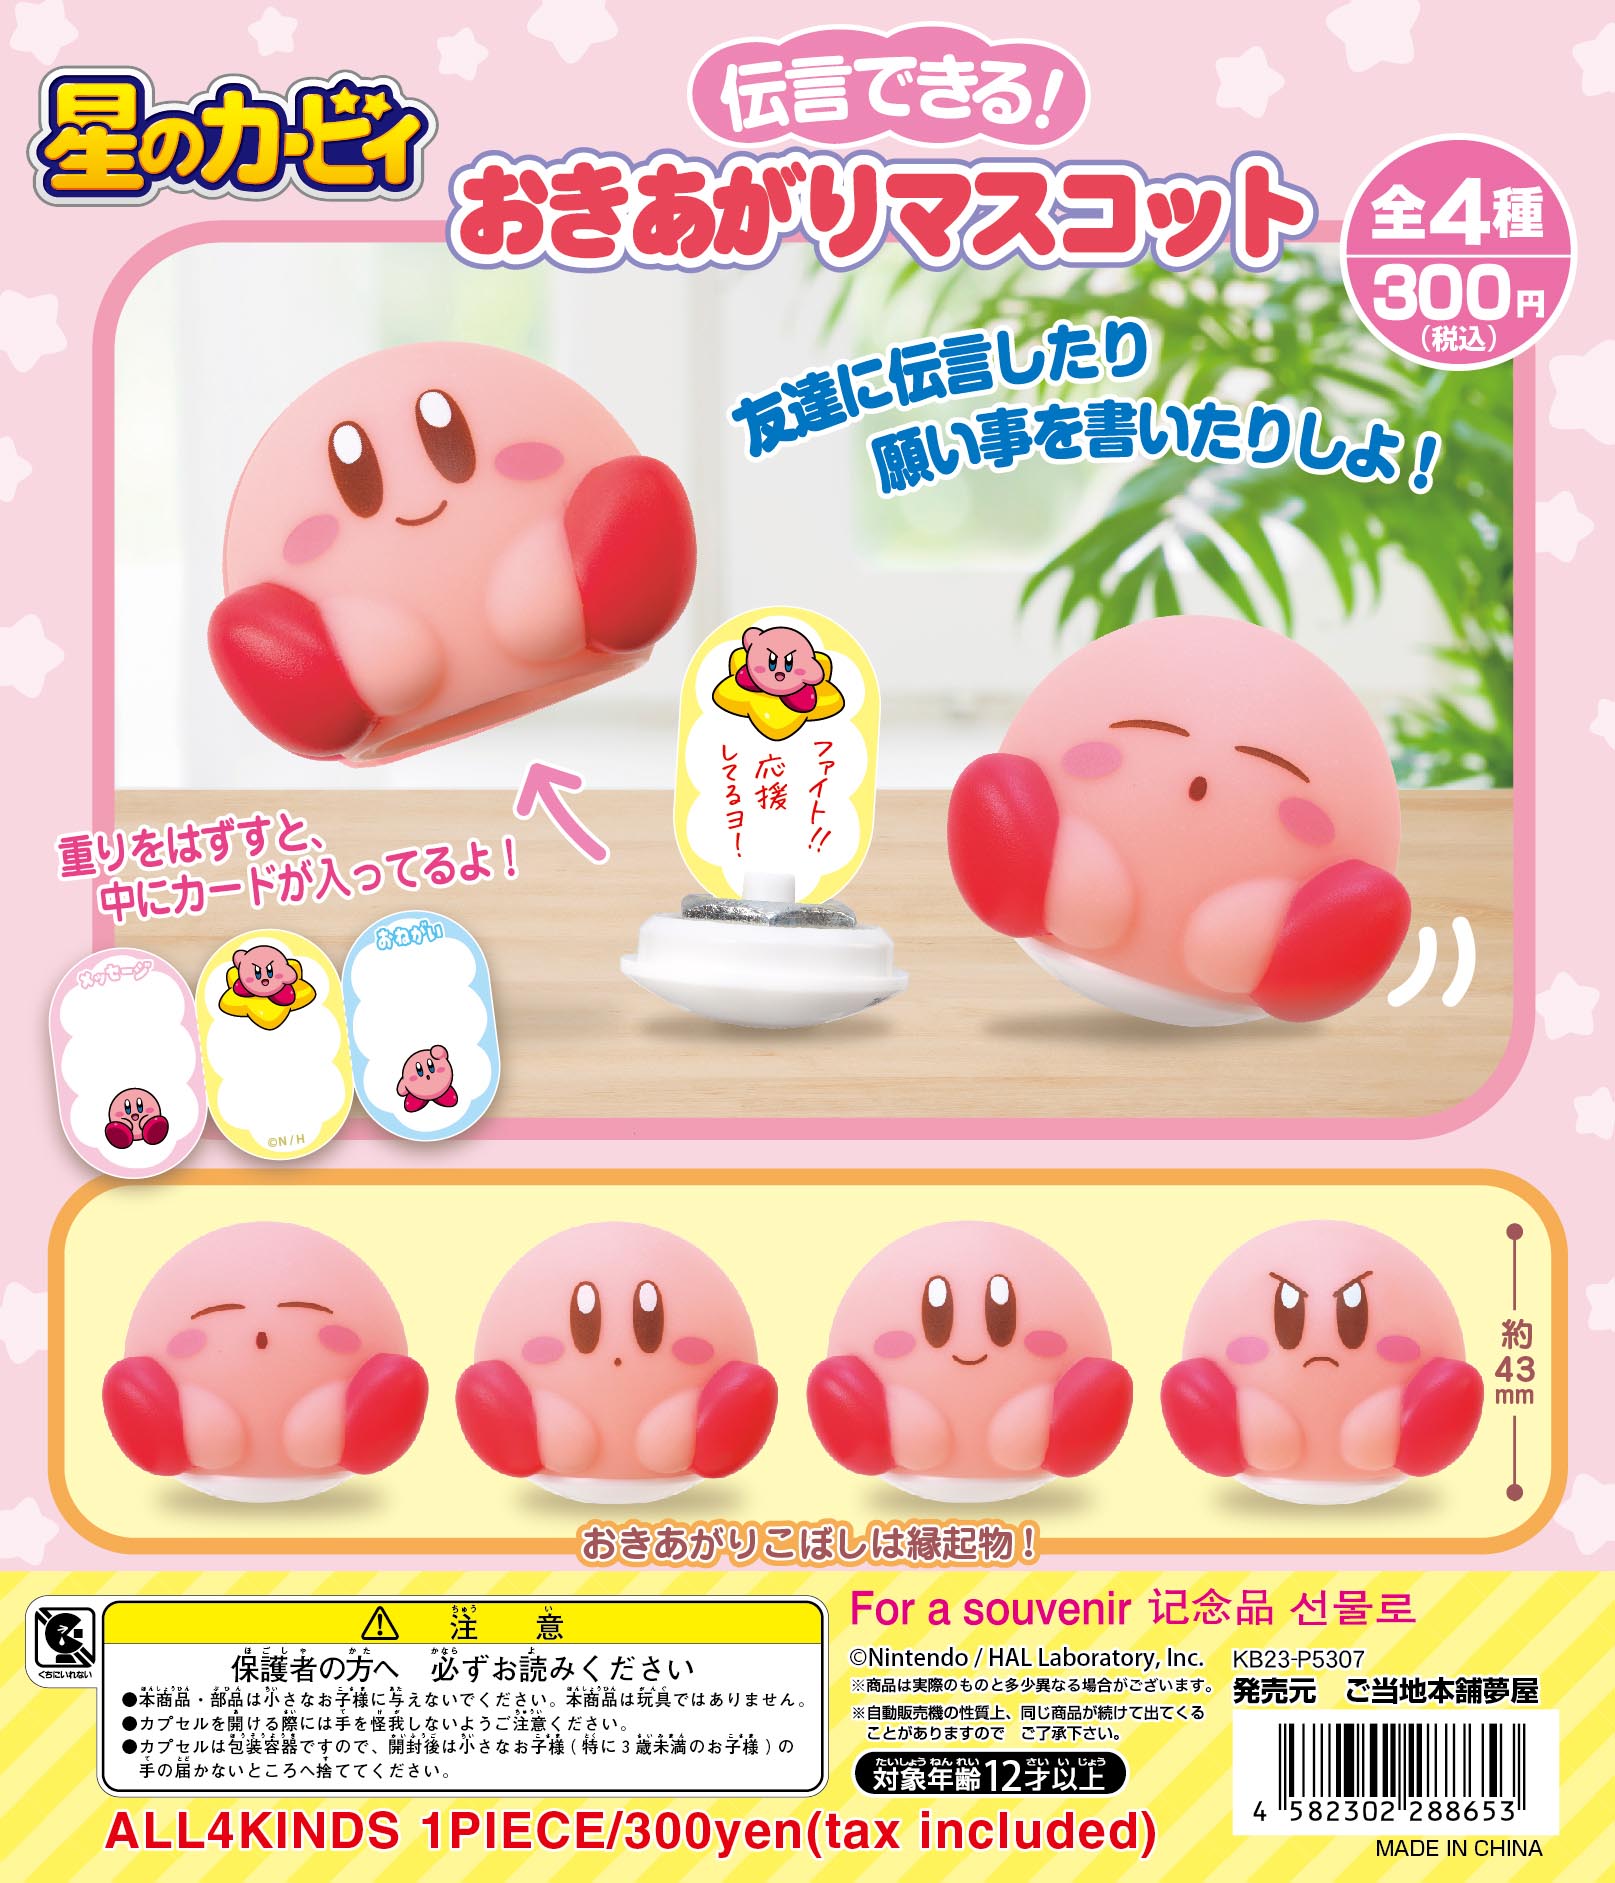 CP2721 Kirby's Dream Land Okiagari Mascot